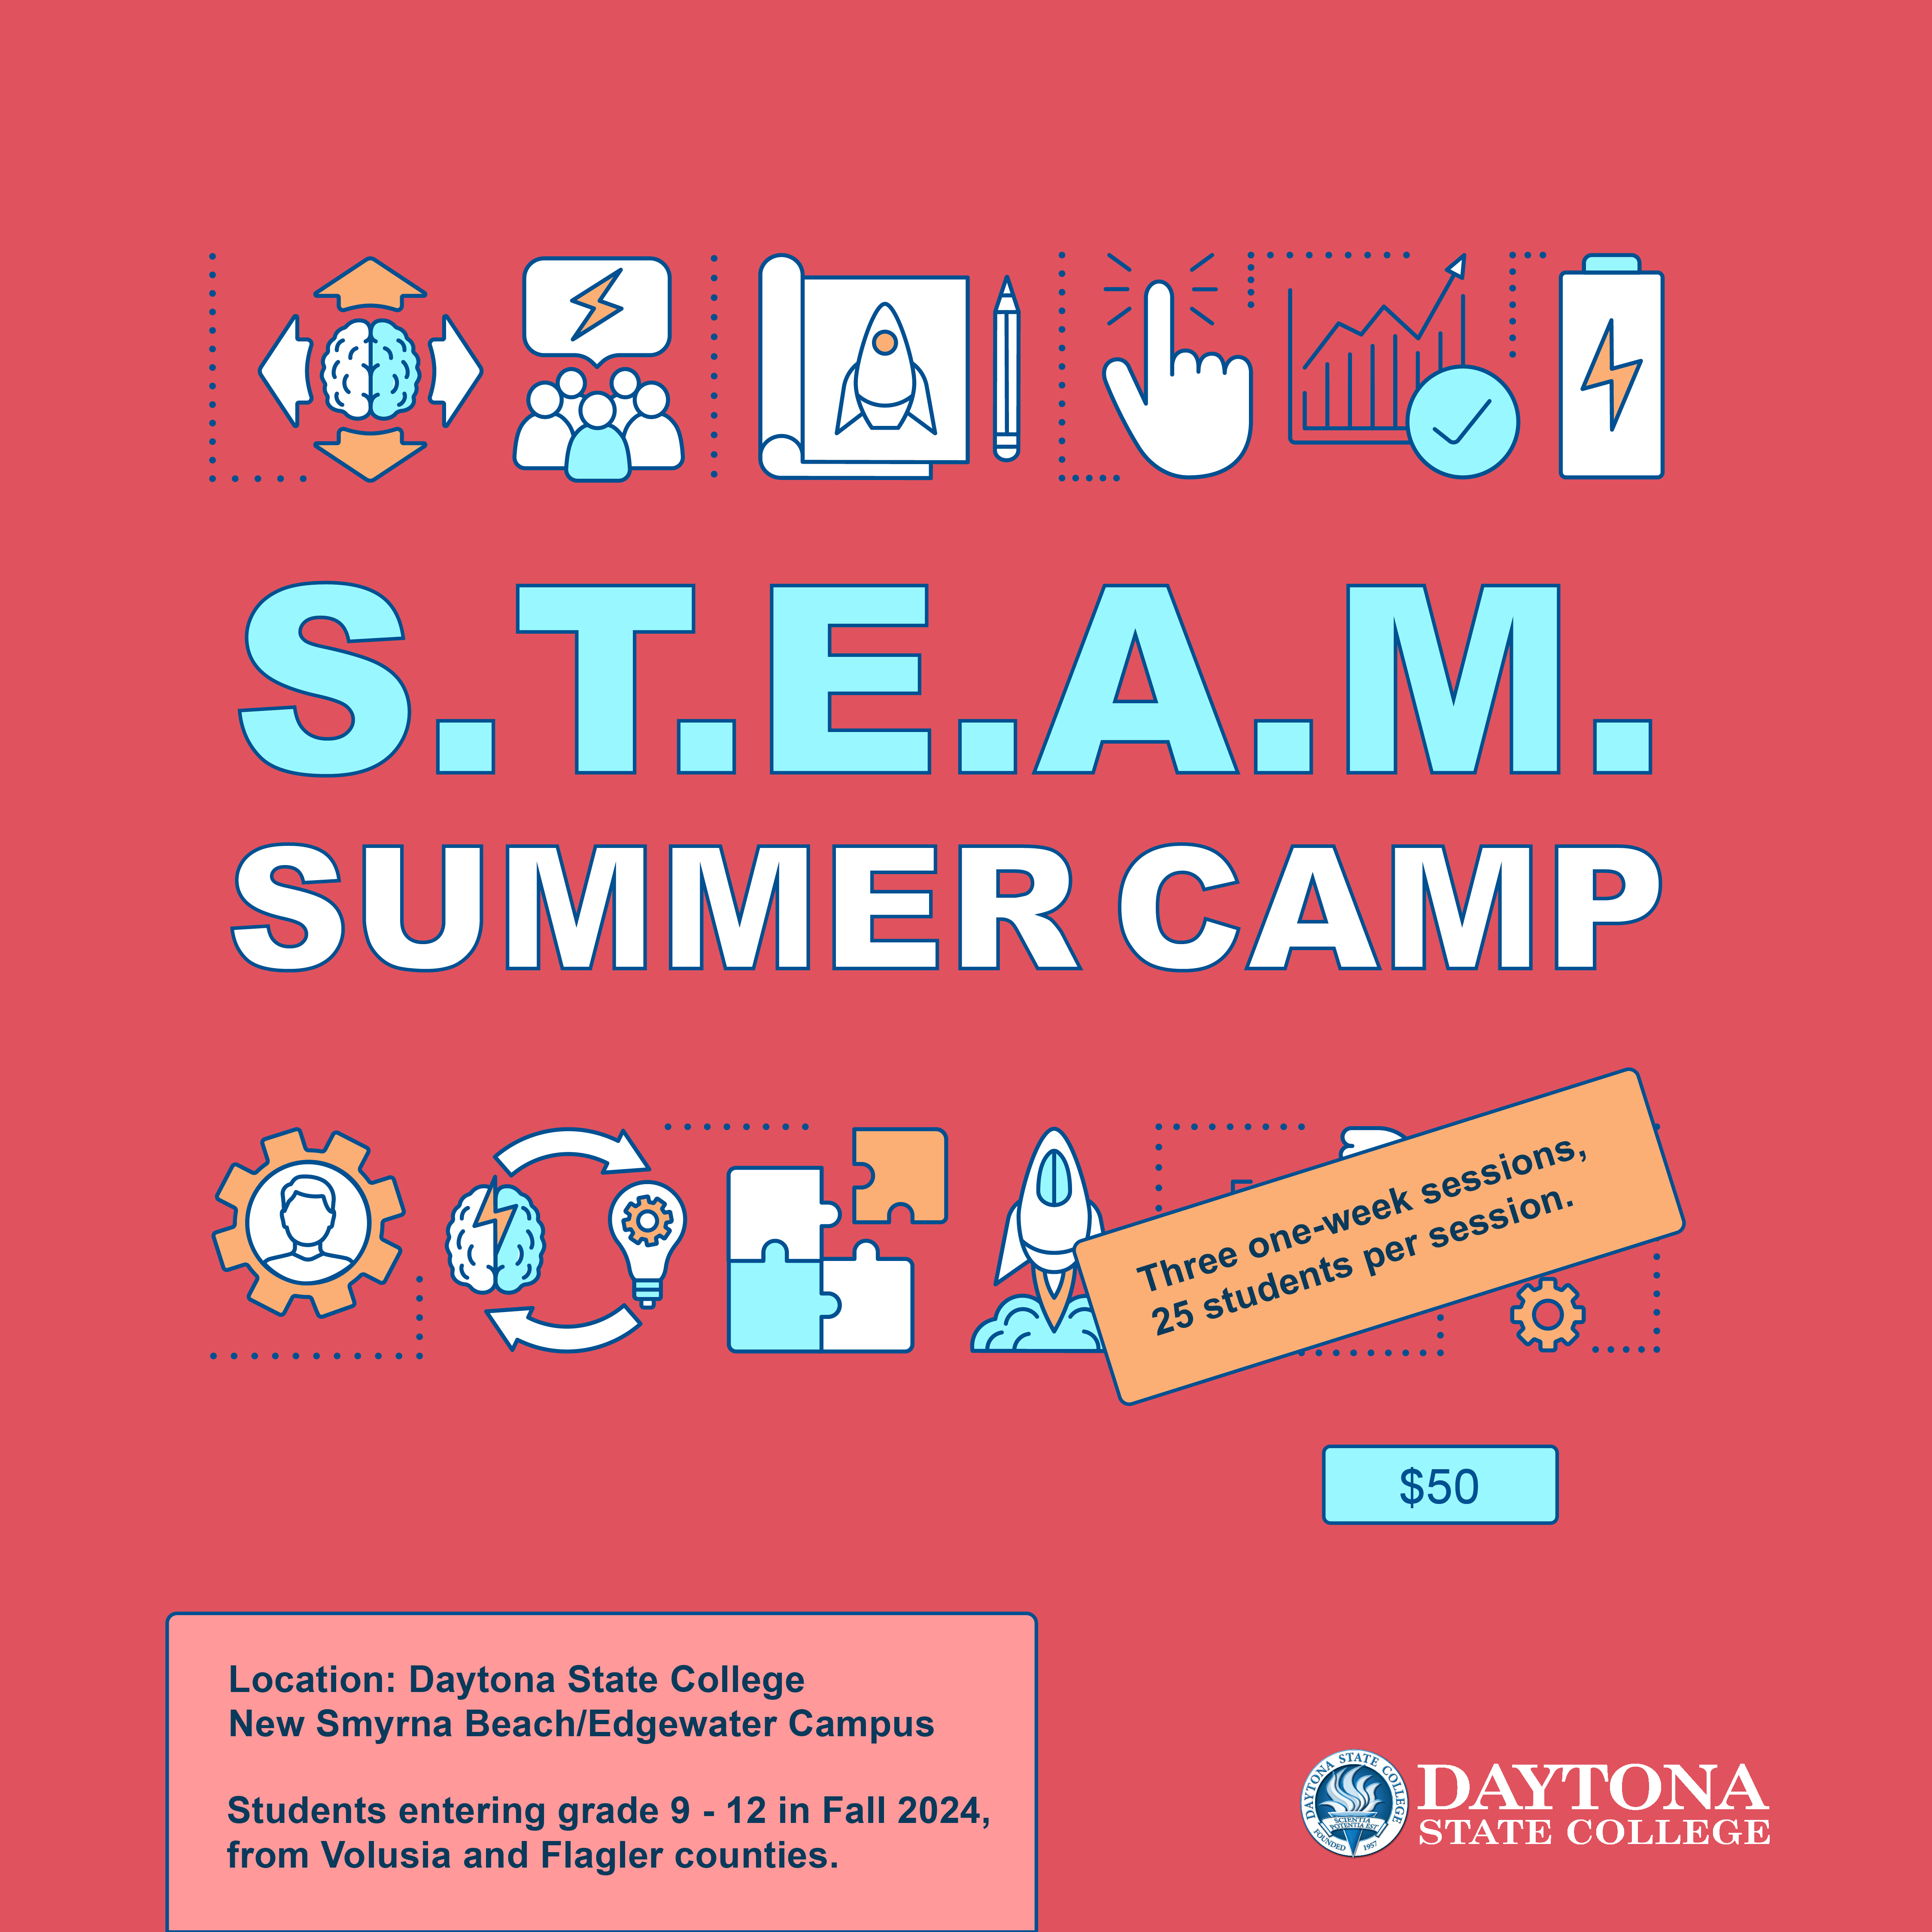 Steam Summer Camp